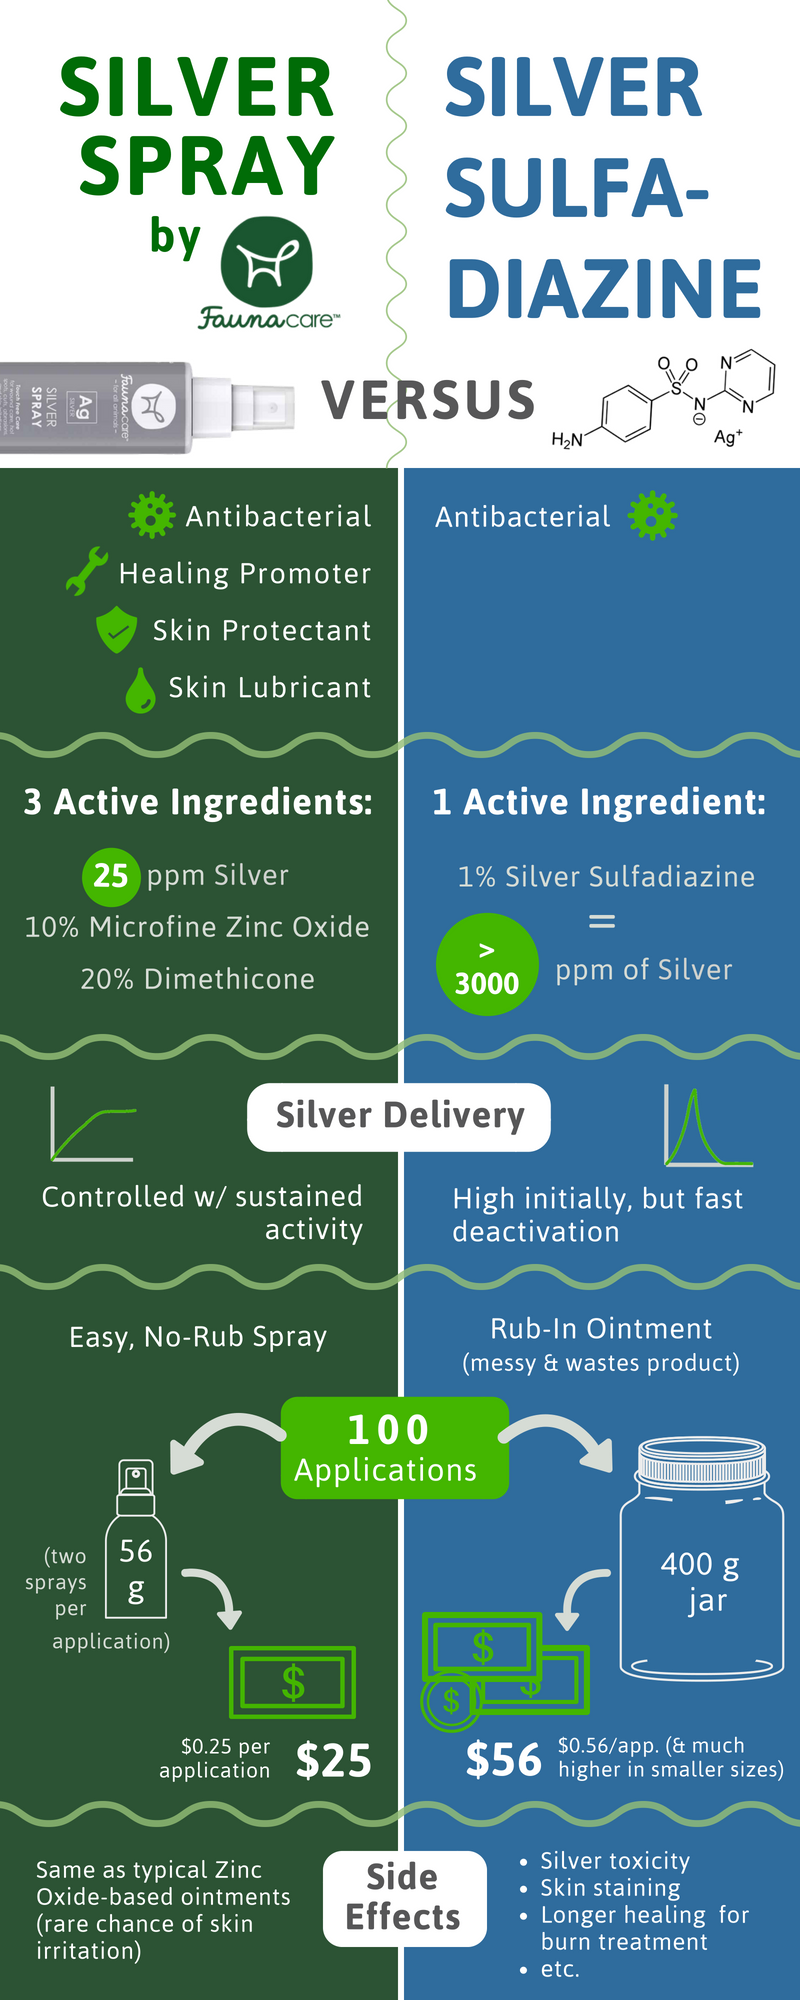 Perché dovresti usare lo spray d argento invece della sulfadiazina d argento